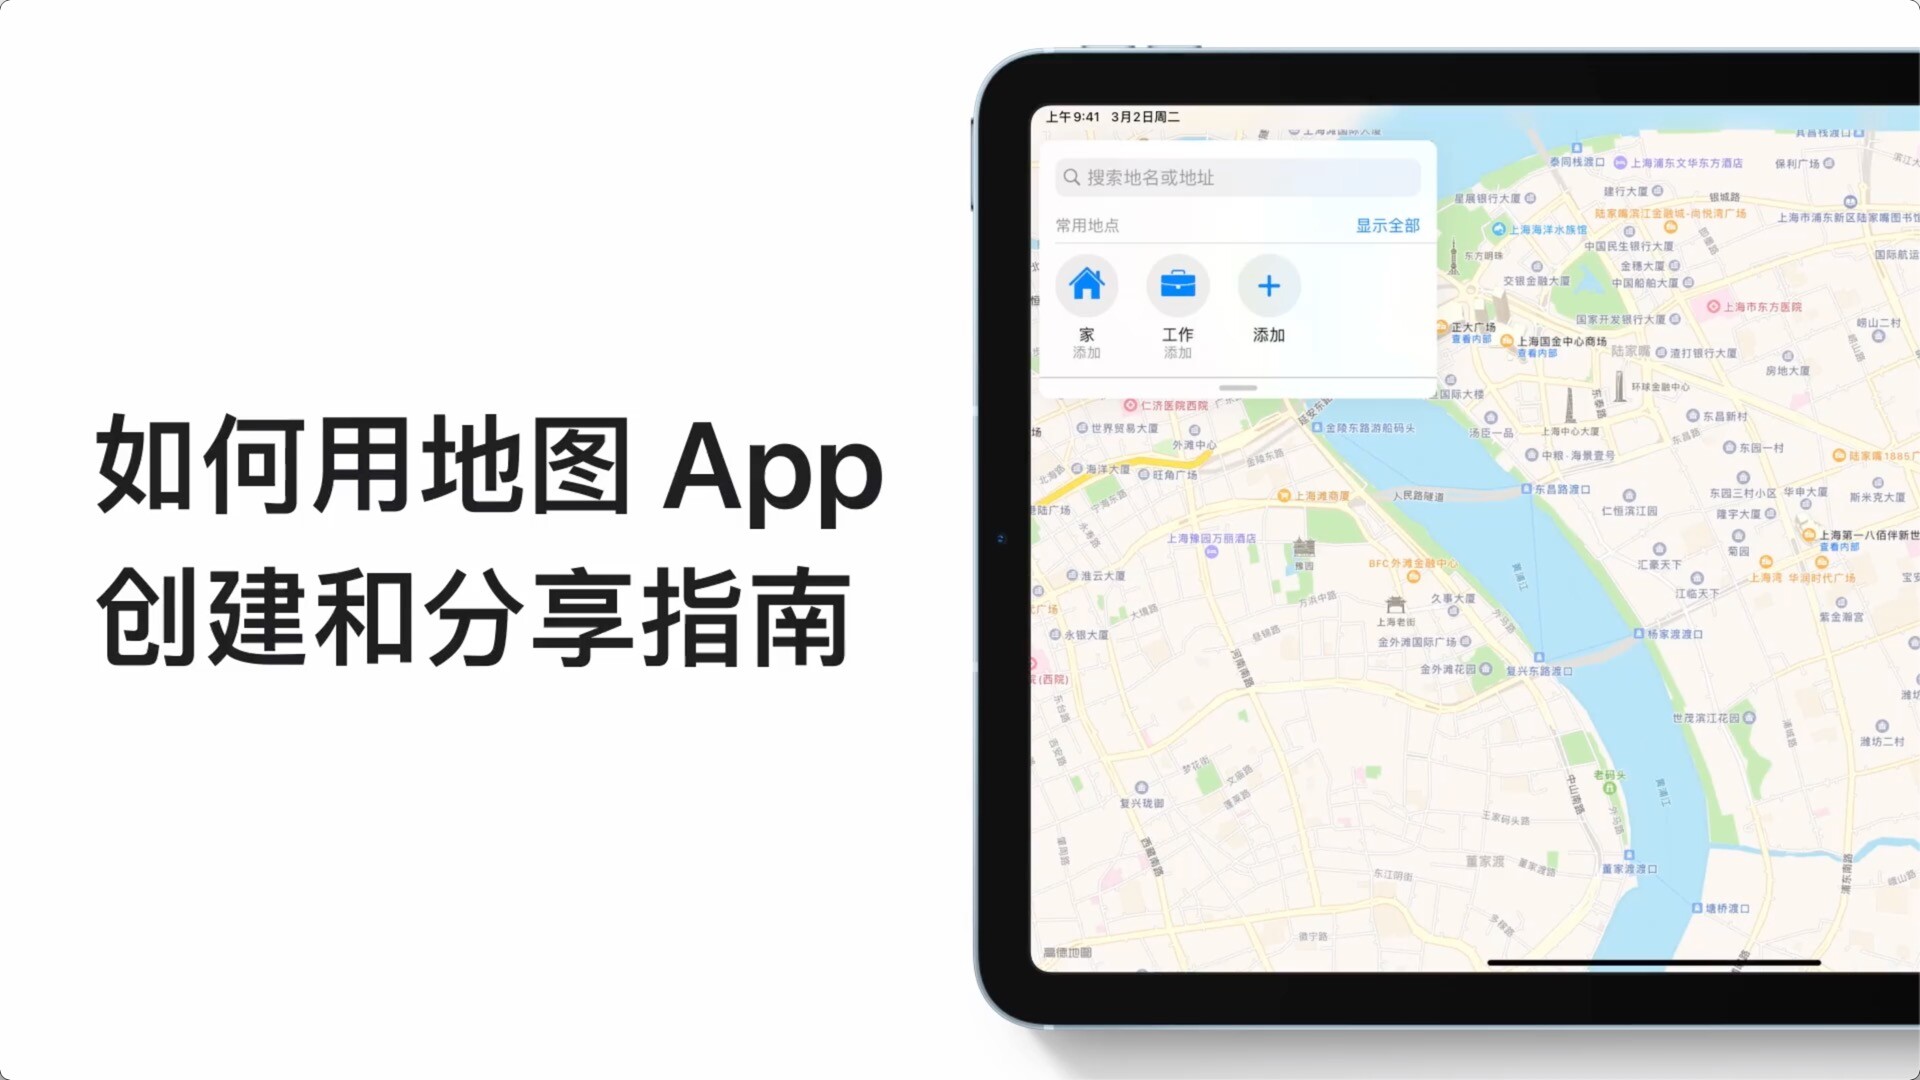 如何使用apple设备上的地图软件创建和分享指南？